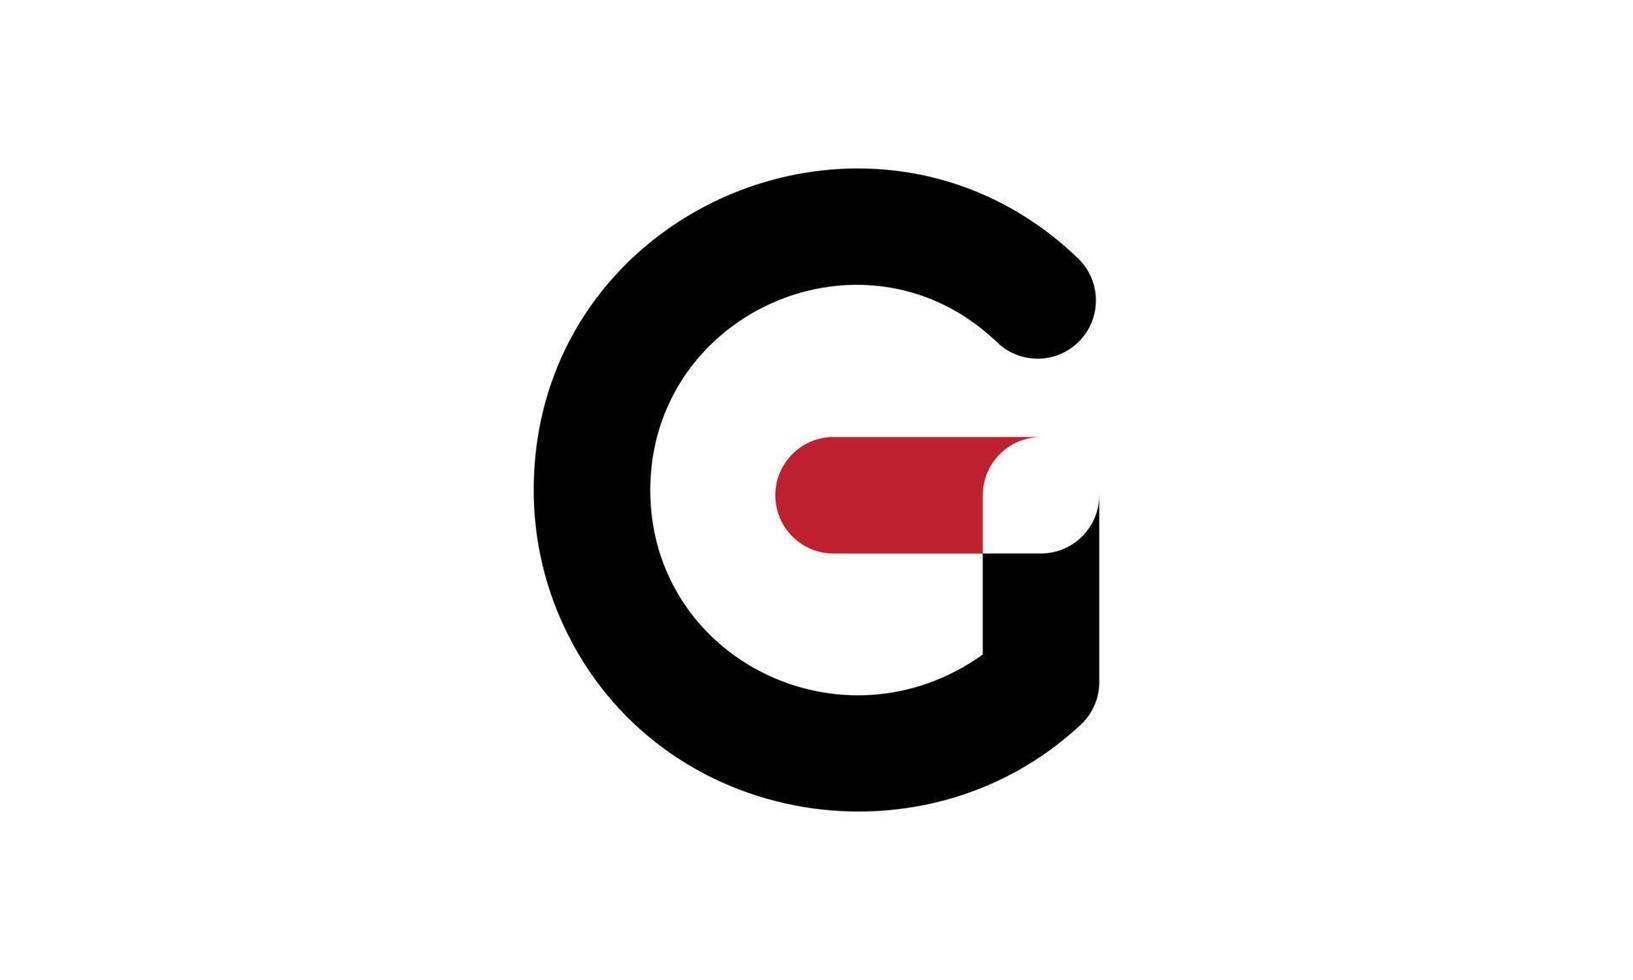 Letter G Logo Design. Initial G Letter Logo Design. G Logo Vector Icon Design. G Simple logo design free vector template.